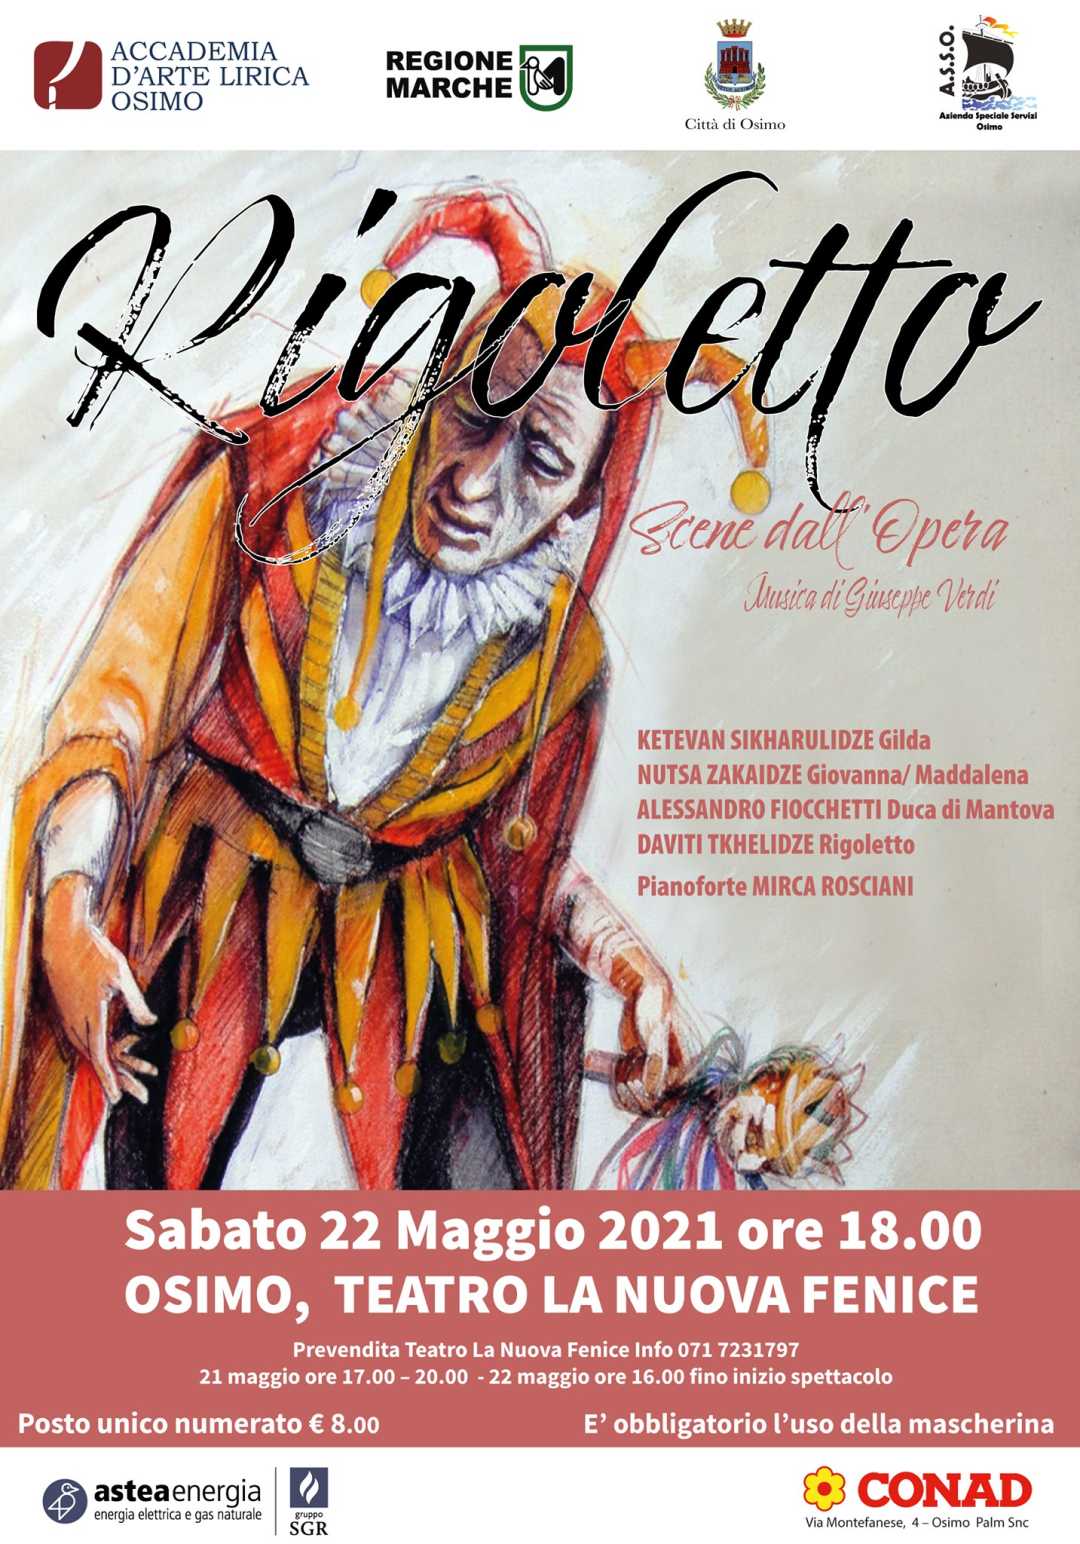 Rigoletto con i solisti dell’Accademia d’Arte Lirica di Osimo